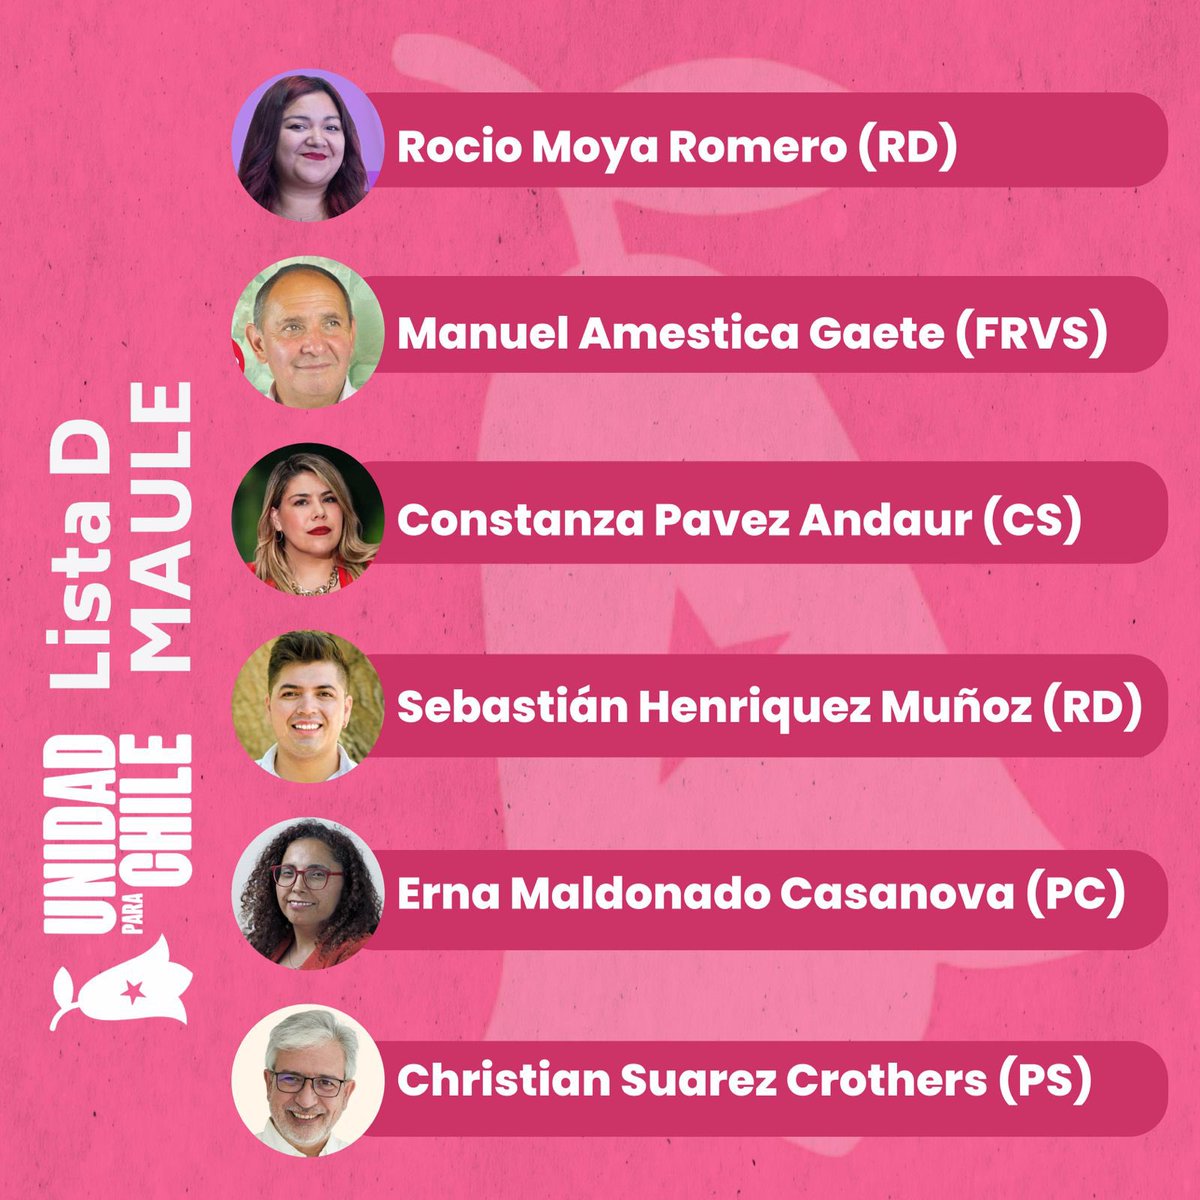 ¡Vota por los candidatos de la lista D #UnidadParaChile este domingo! 

En nuestra región del Maule, esta lista va integrada por:

- Rocio Moya Romero (Ind-RD)
- Manuel Amestica Gaete (FRVS)
- Constanza Pavez Andaur (CS)
- Sebastián Henriquez Muñoz (Ind-RD)
- Erna Maldonado…